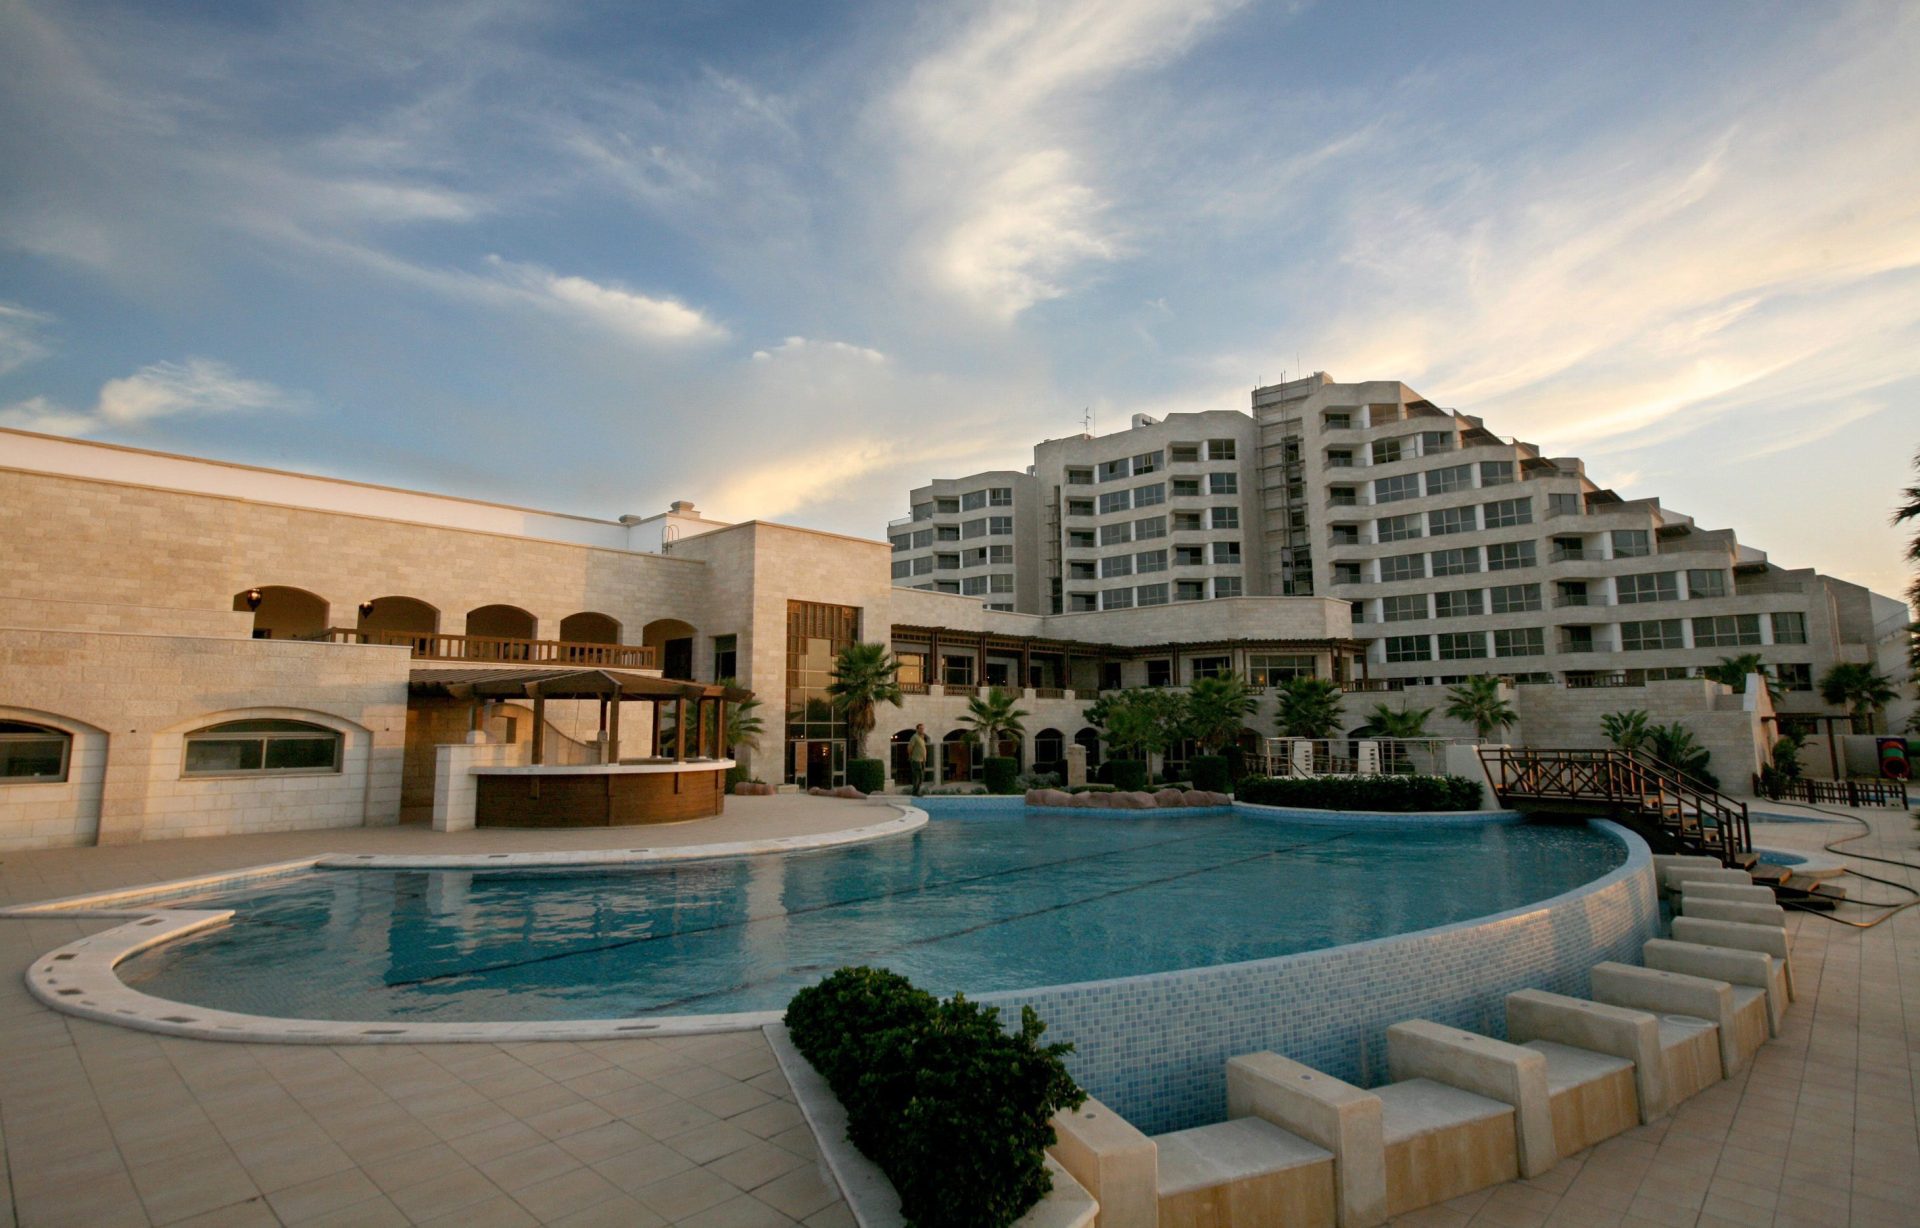 Imagen de archivo del hotel Moevenpick, primer cinco estrellas que se construyó en Gaza. EFE/ALI ALI